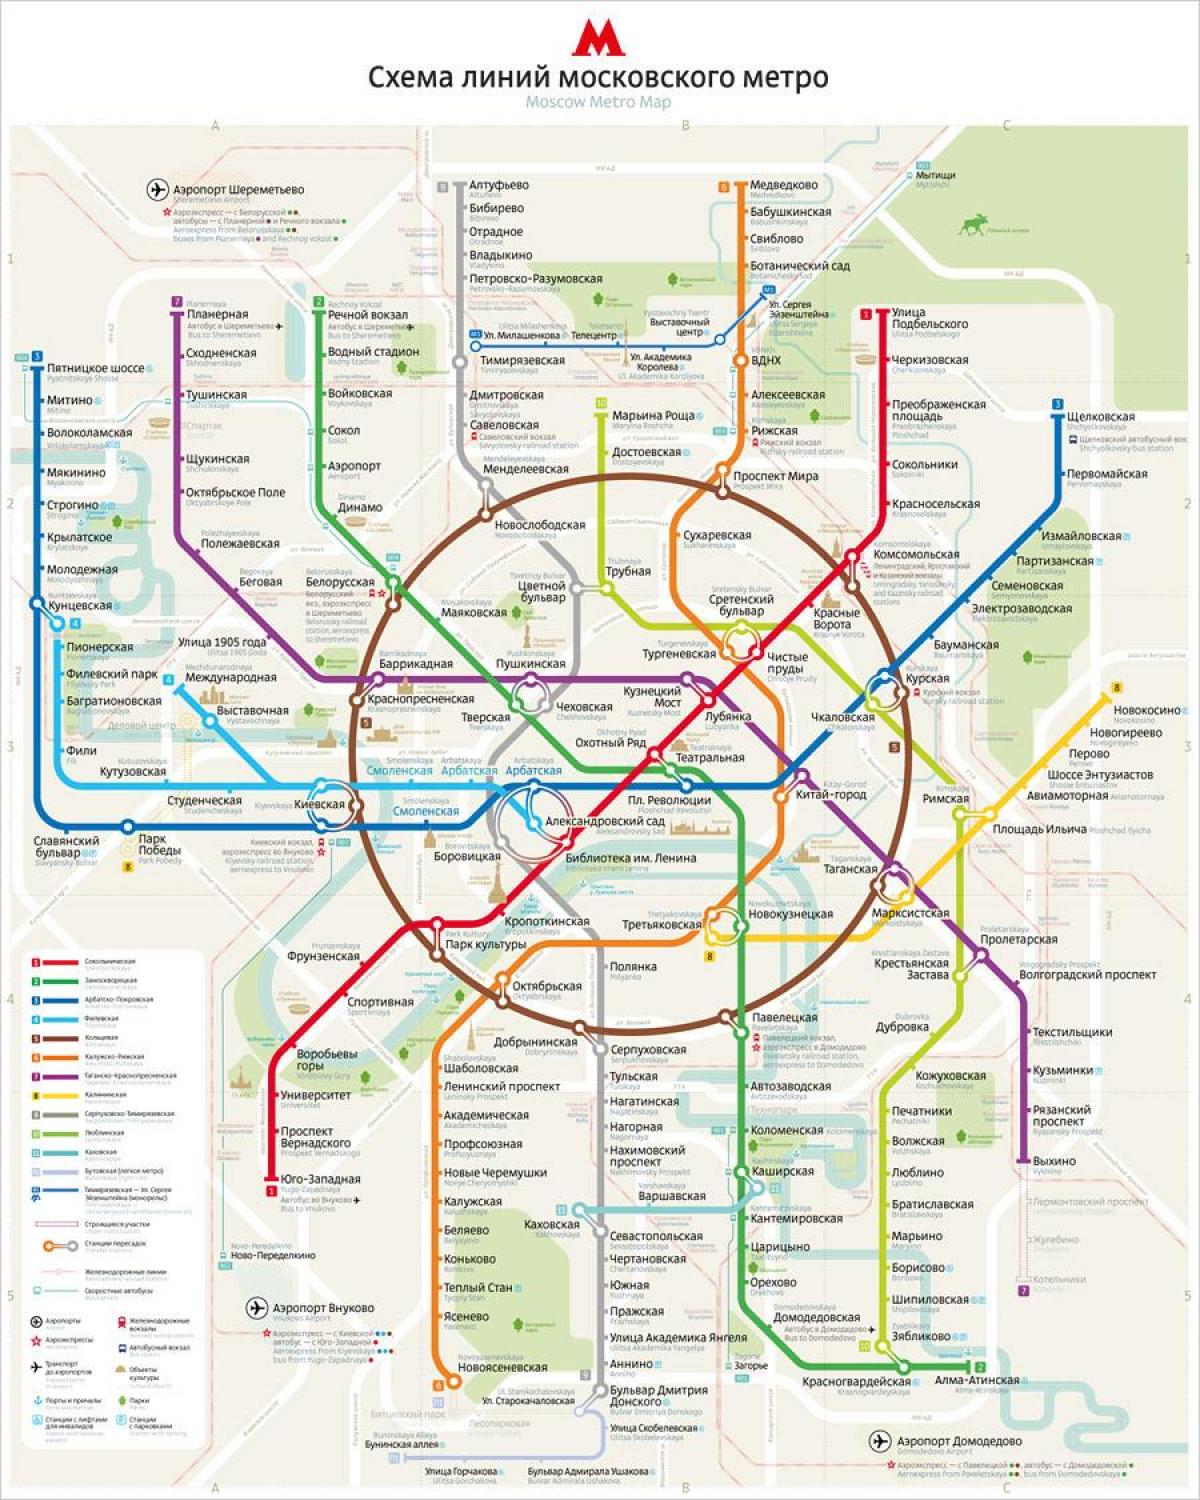 Moskova metro haritası İngilizce ve Rusça